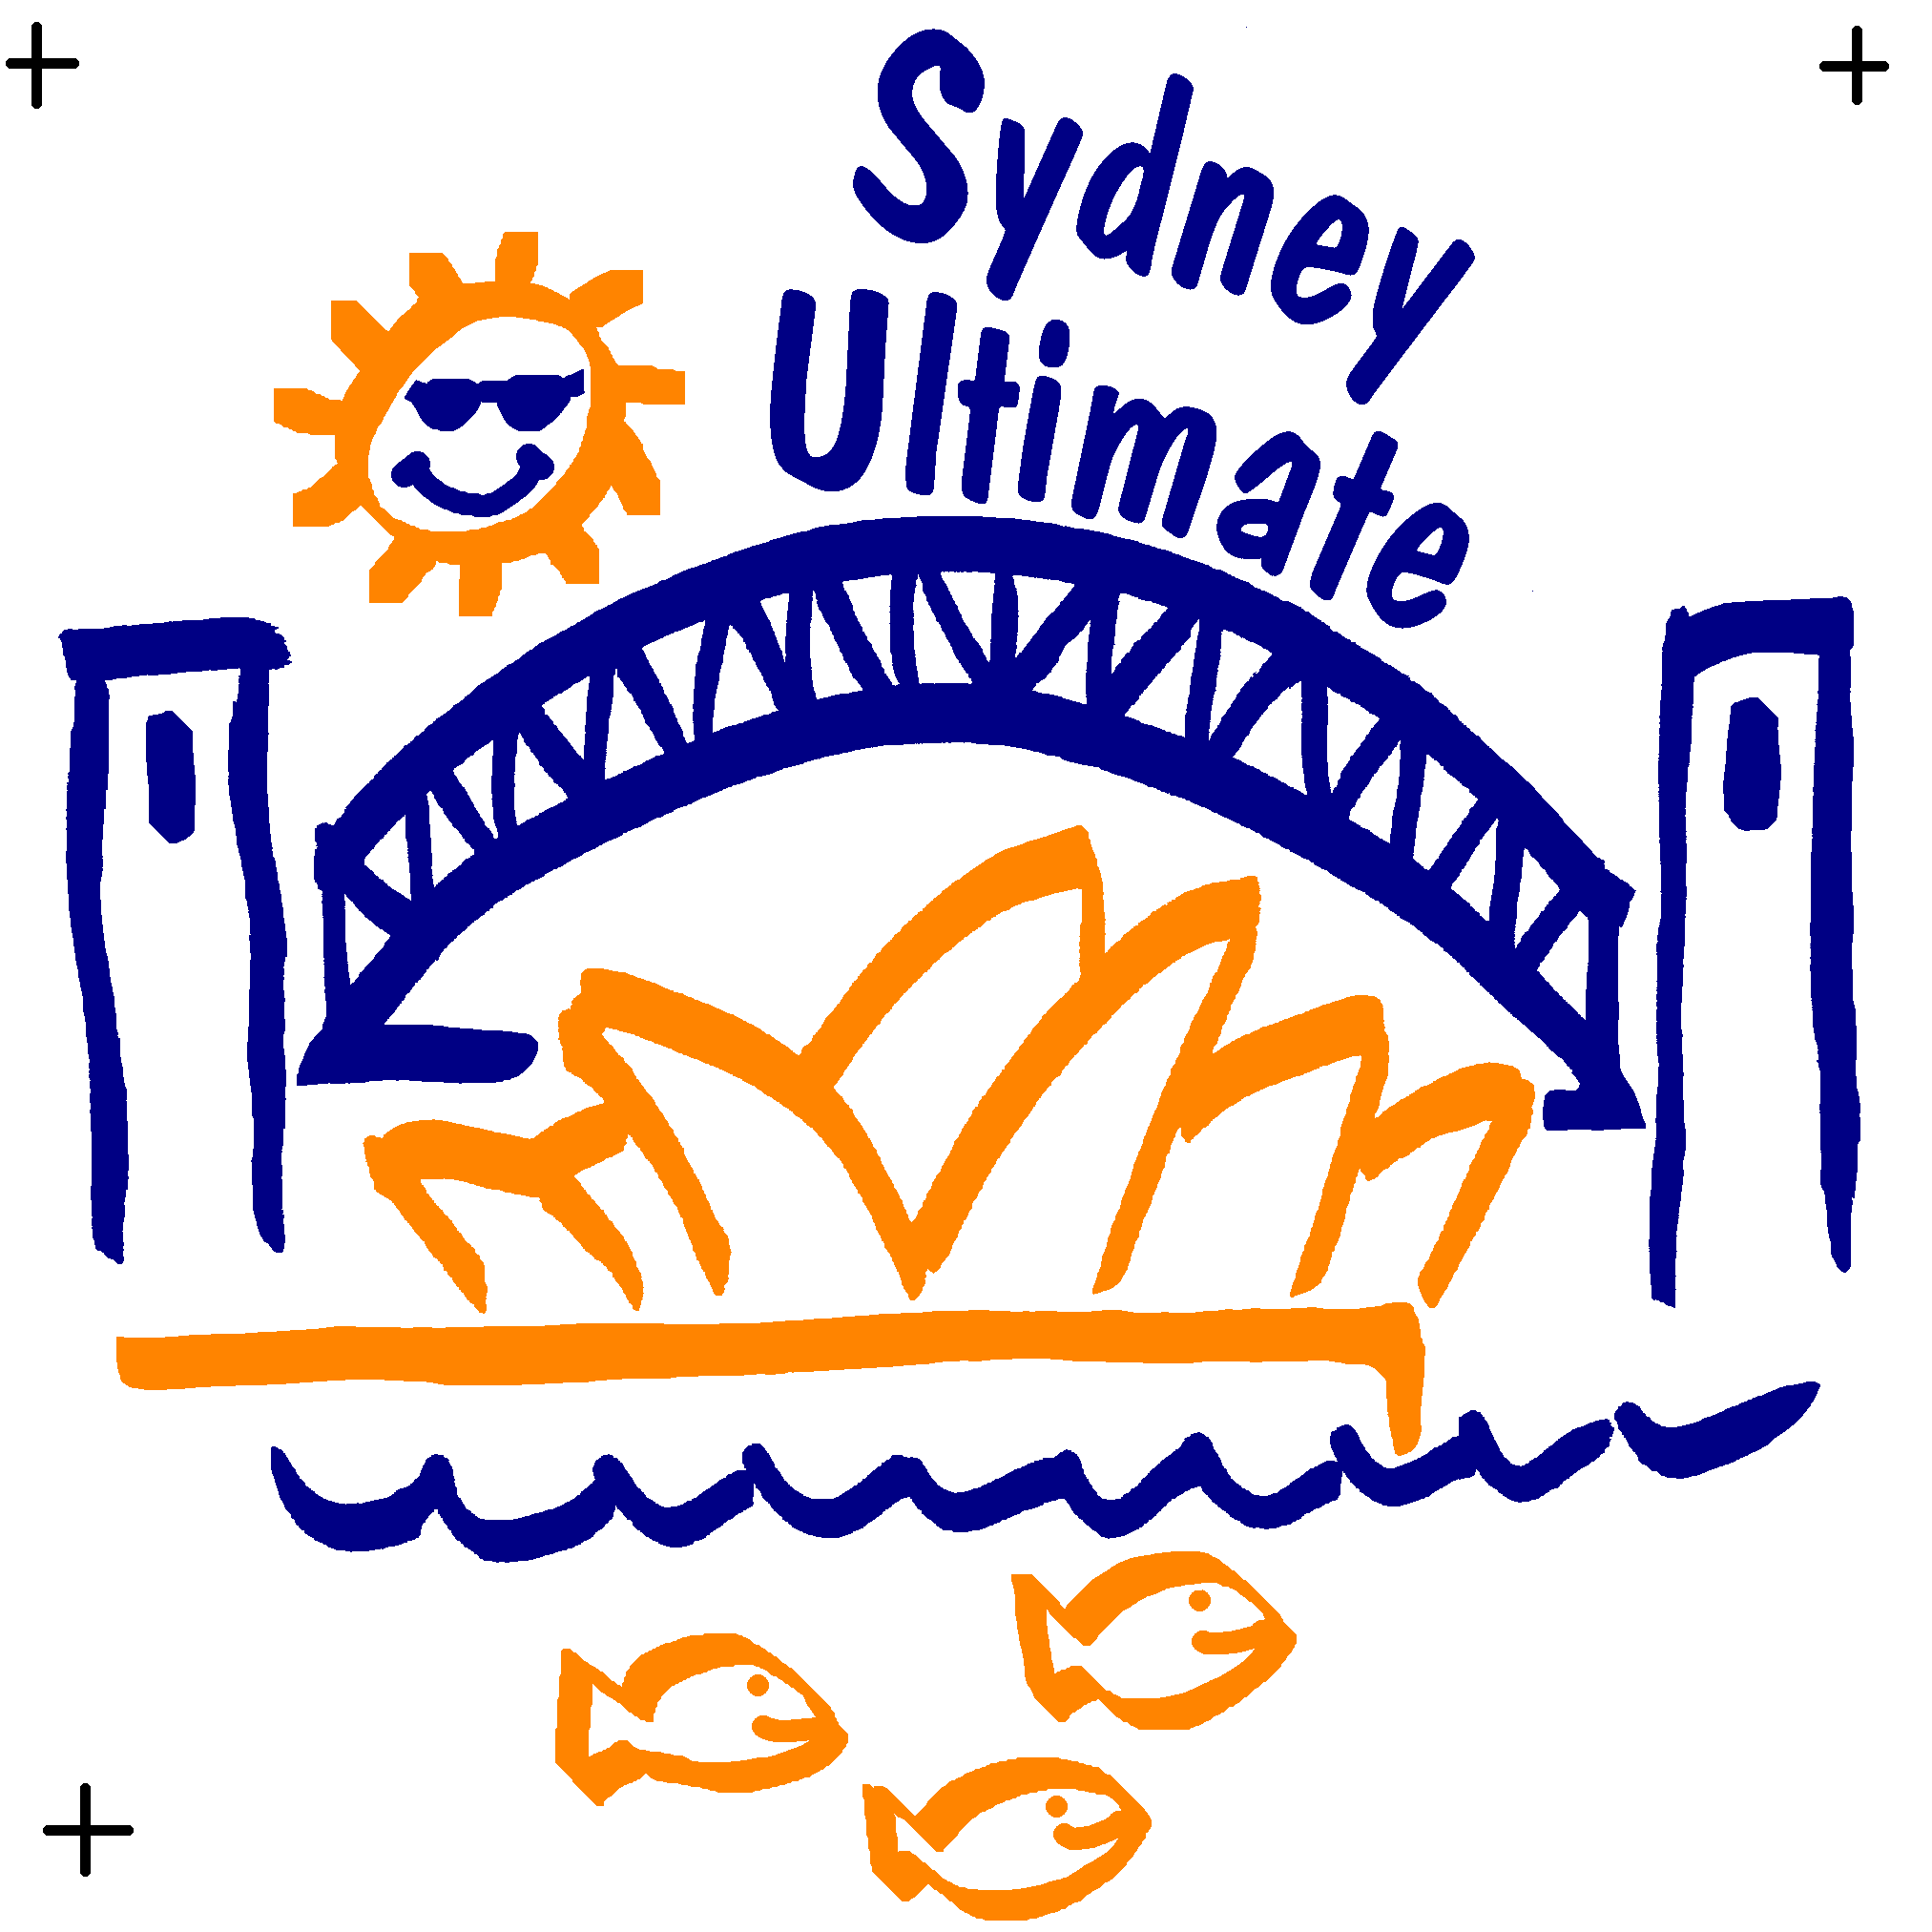 Sydney Ultimate disc design